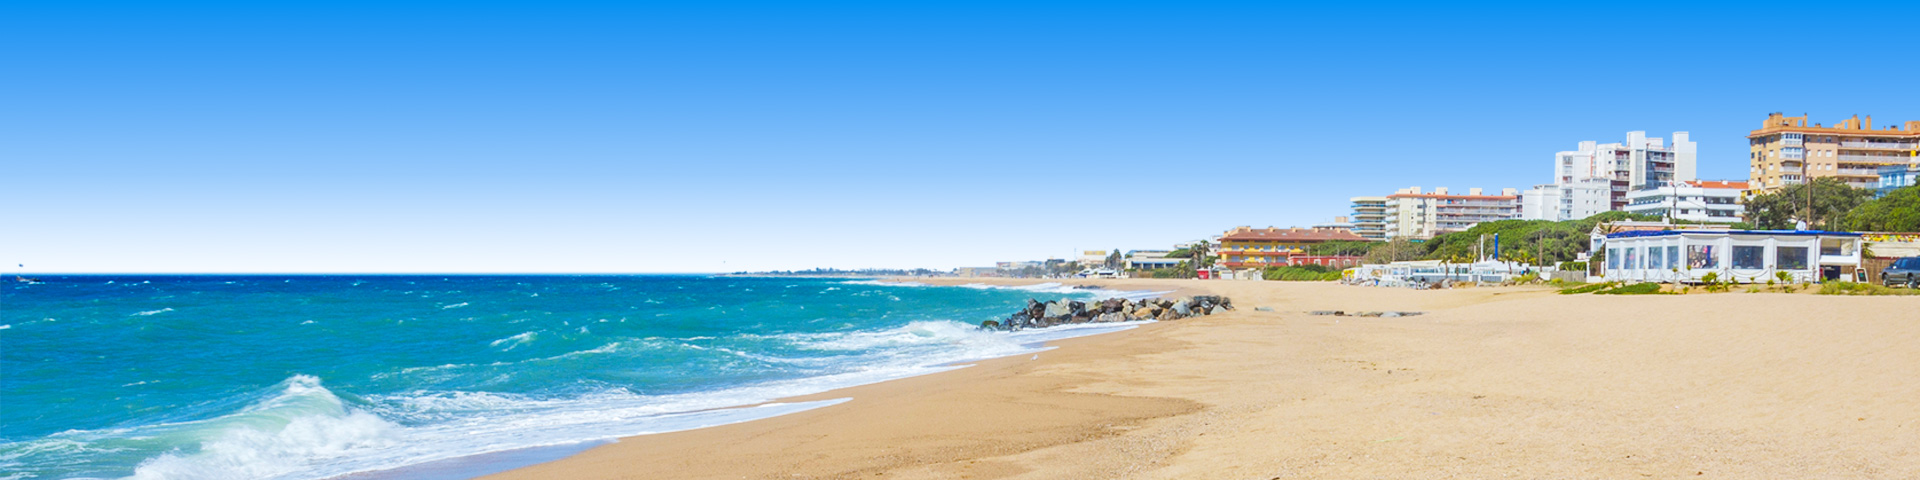 Blauwe zee met strand en hotels in Santa Susanna